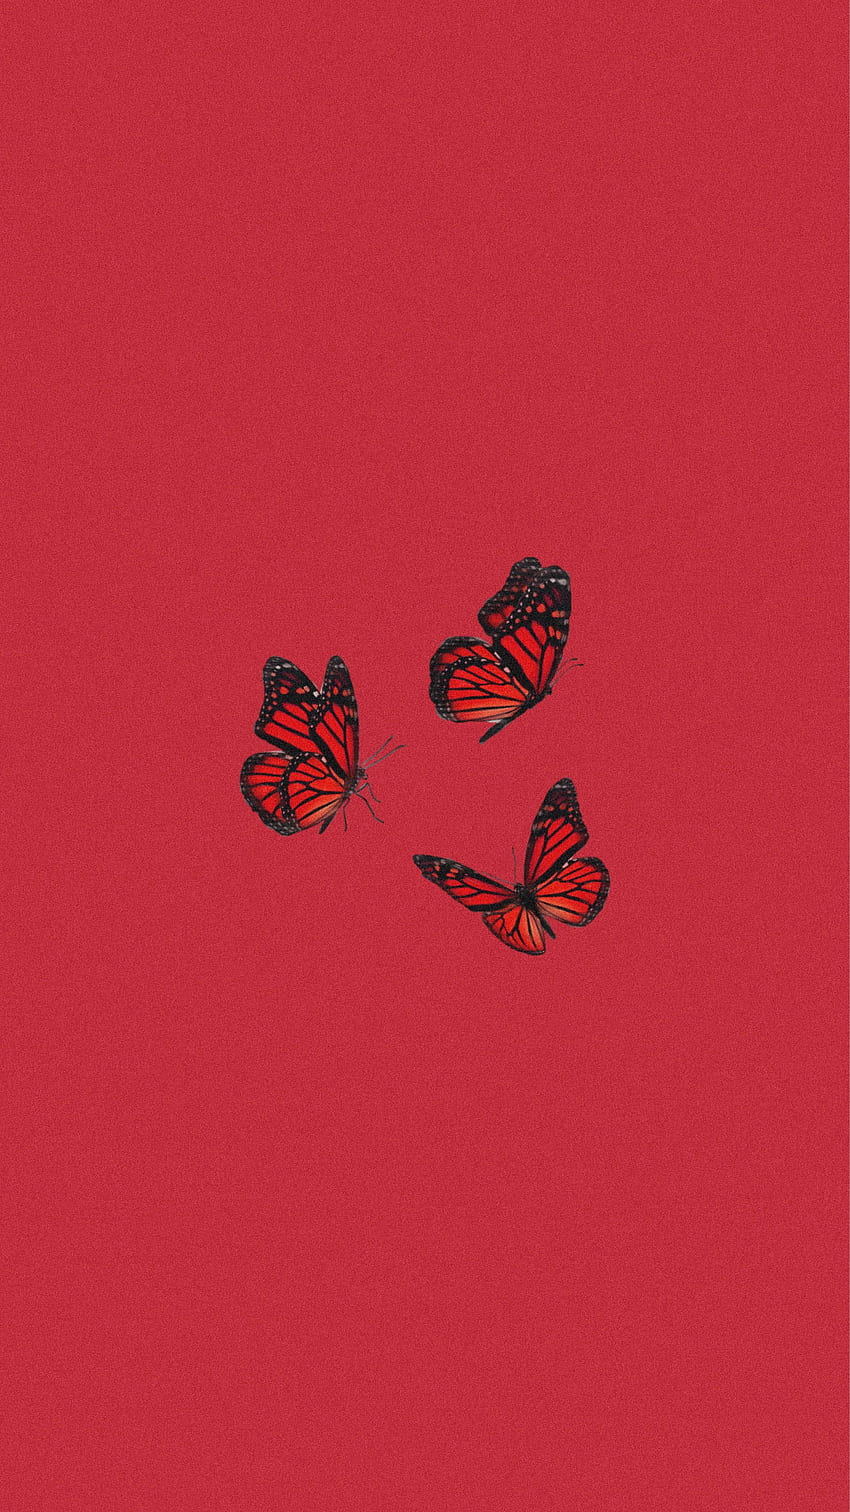 Để tăng thêm sự thẩm mỹ cho chiếc iPhone của bạn, các hình ảnh về con bướm sẽ khiến cho bạn không thể rời mắt khỏi chúng. Thiết kế Butterfly iPhone - Aesthetic sẽ làm cho bạn hài lòng với sự hoàn hảo về màu sắc và phối hợp các hình vẽ độc đáo. 